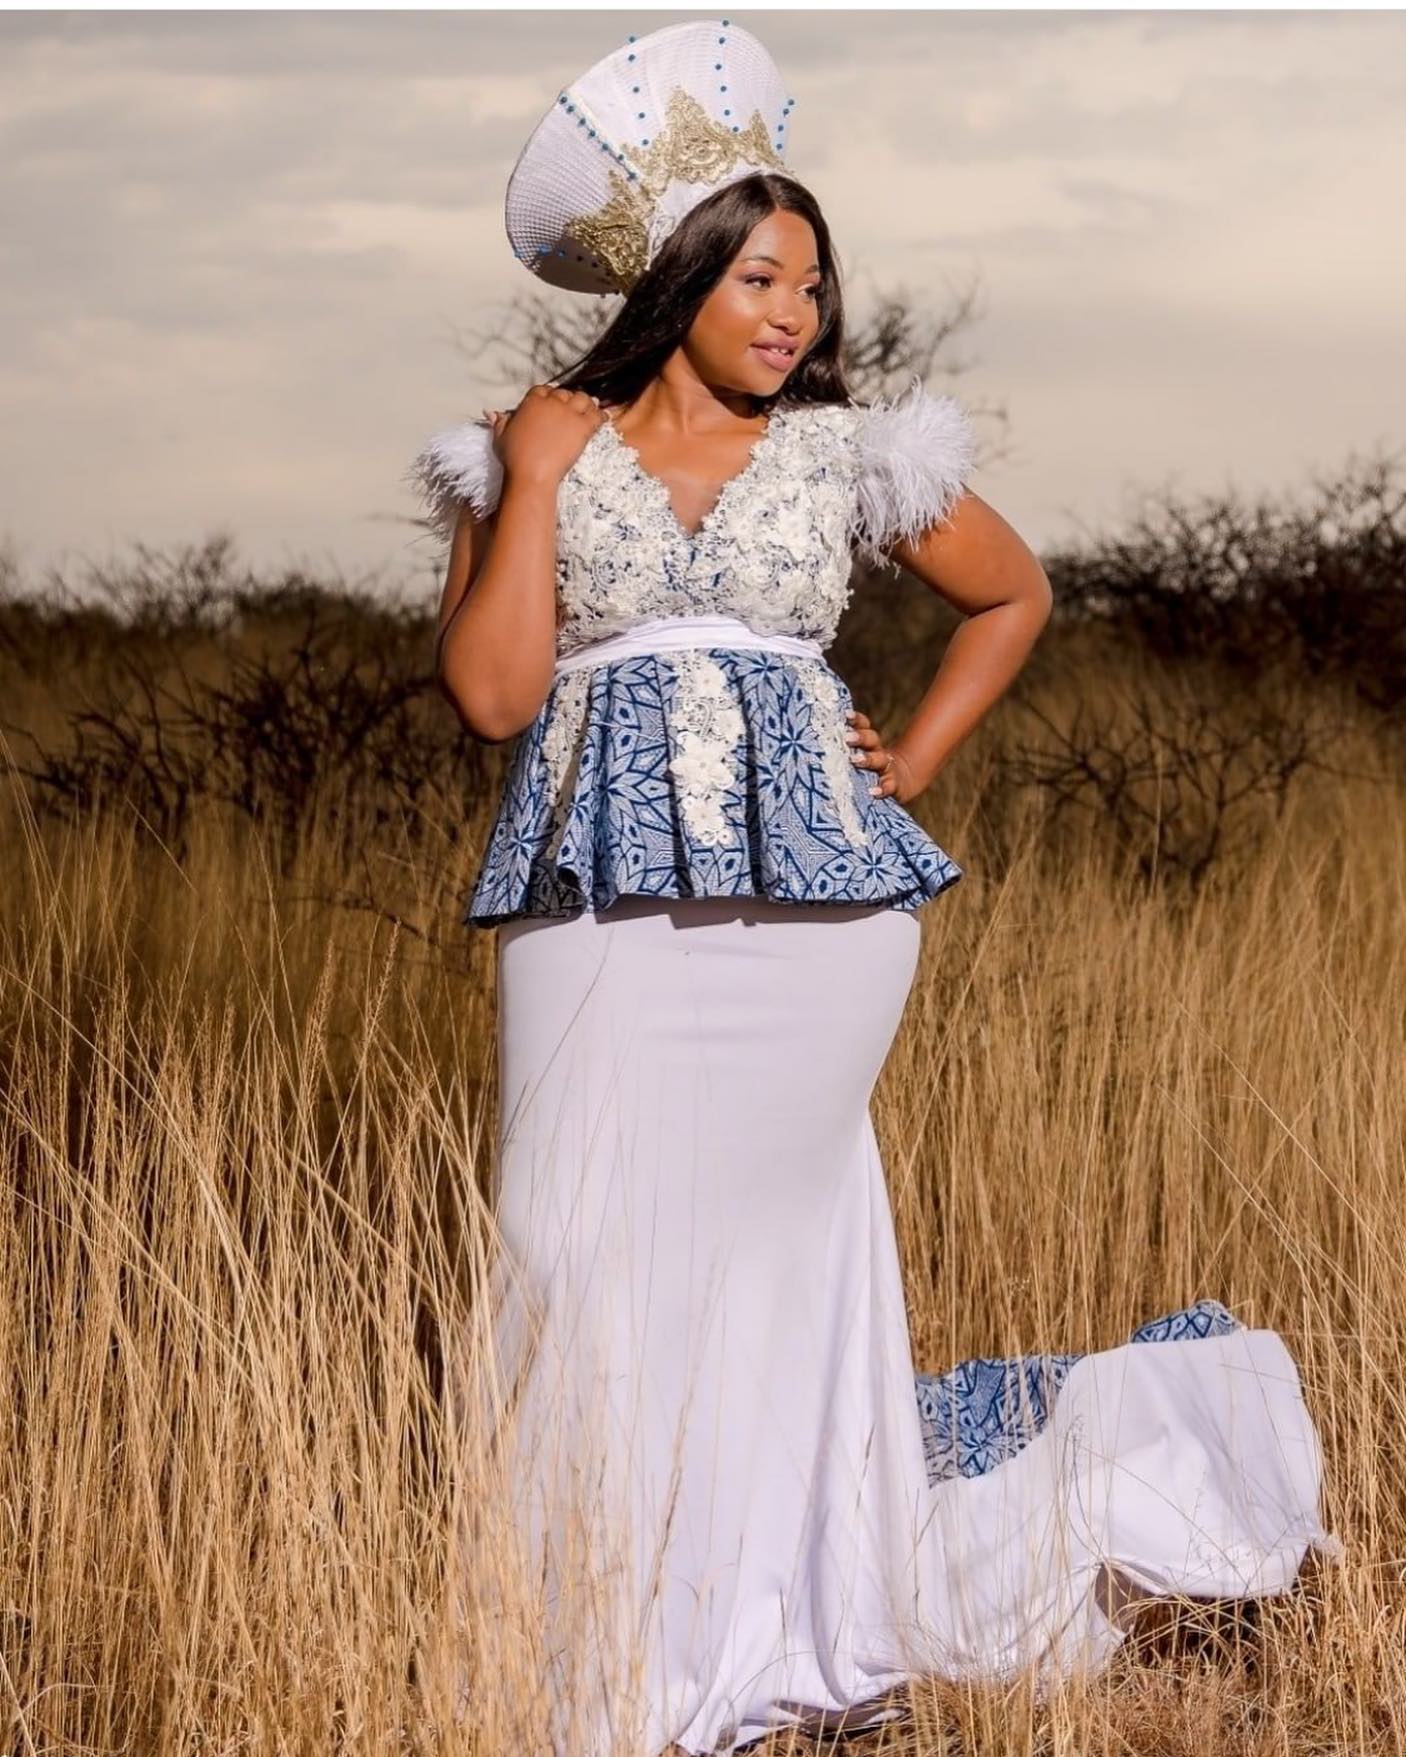 Traditional Tswana Dresses 2022 For Women – Dresses Designs 20